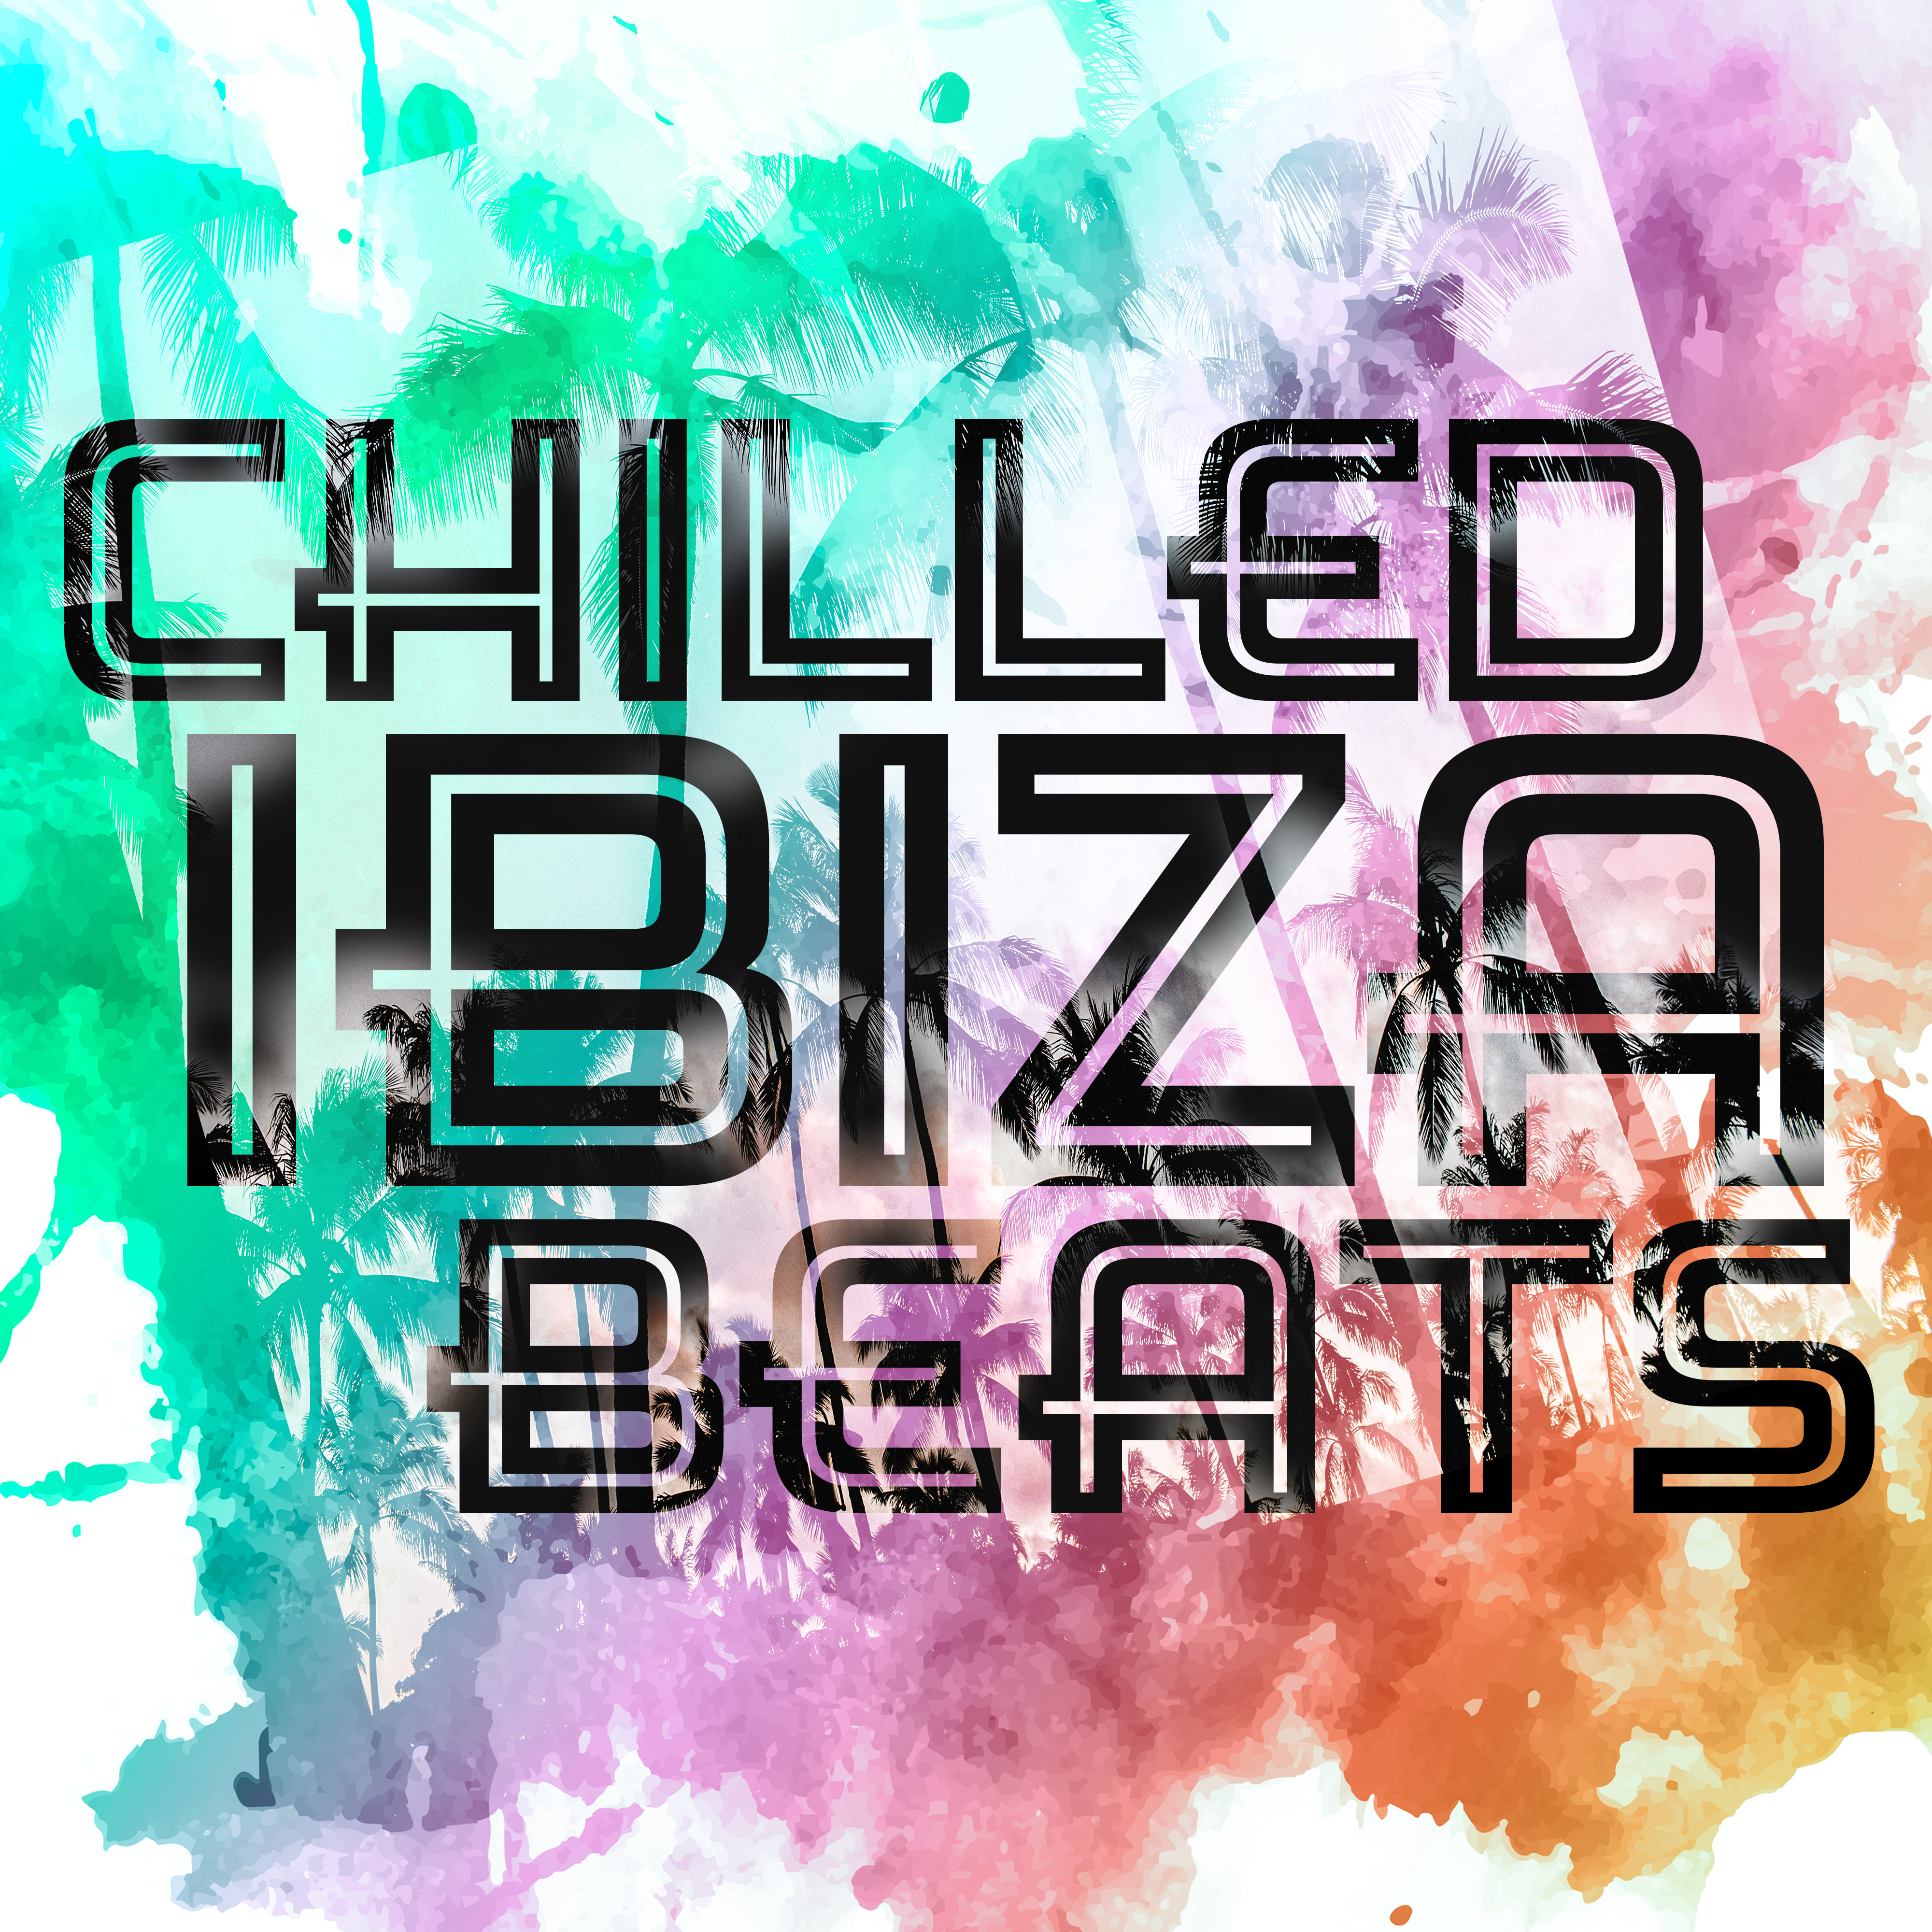 Chilled Ibiza Beats